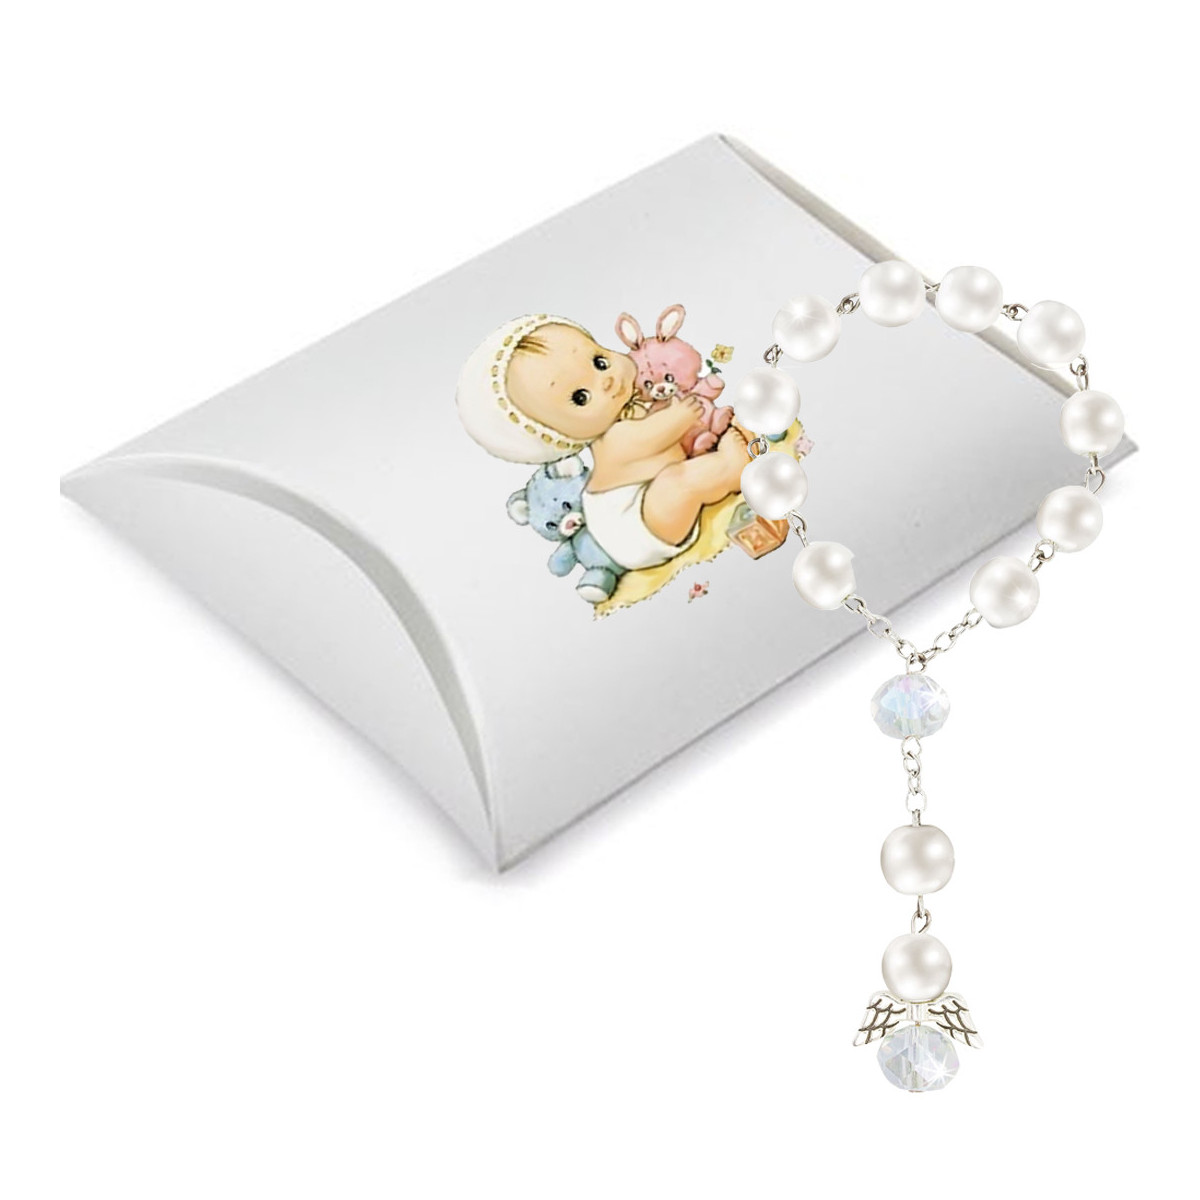 Rosario de perlas blancas para bautizo presentada en caja decorada con adhesivo